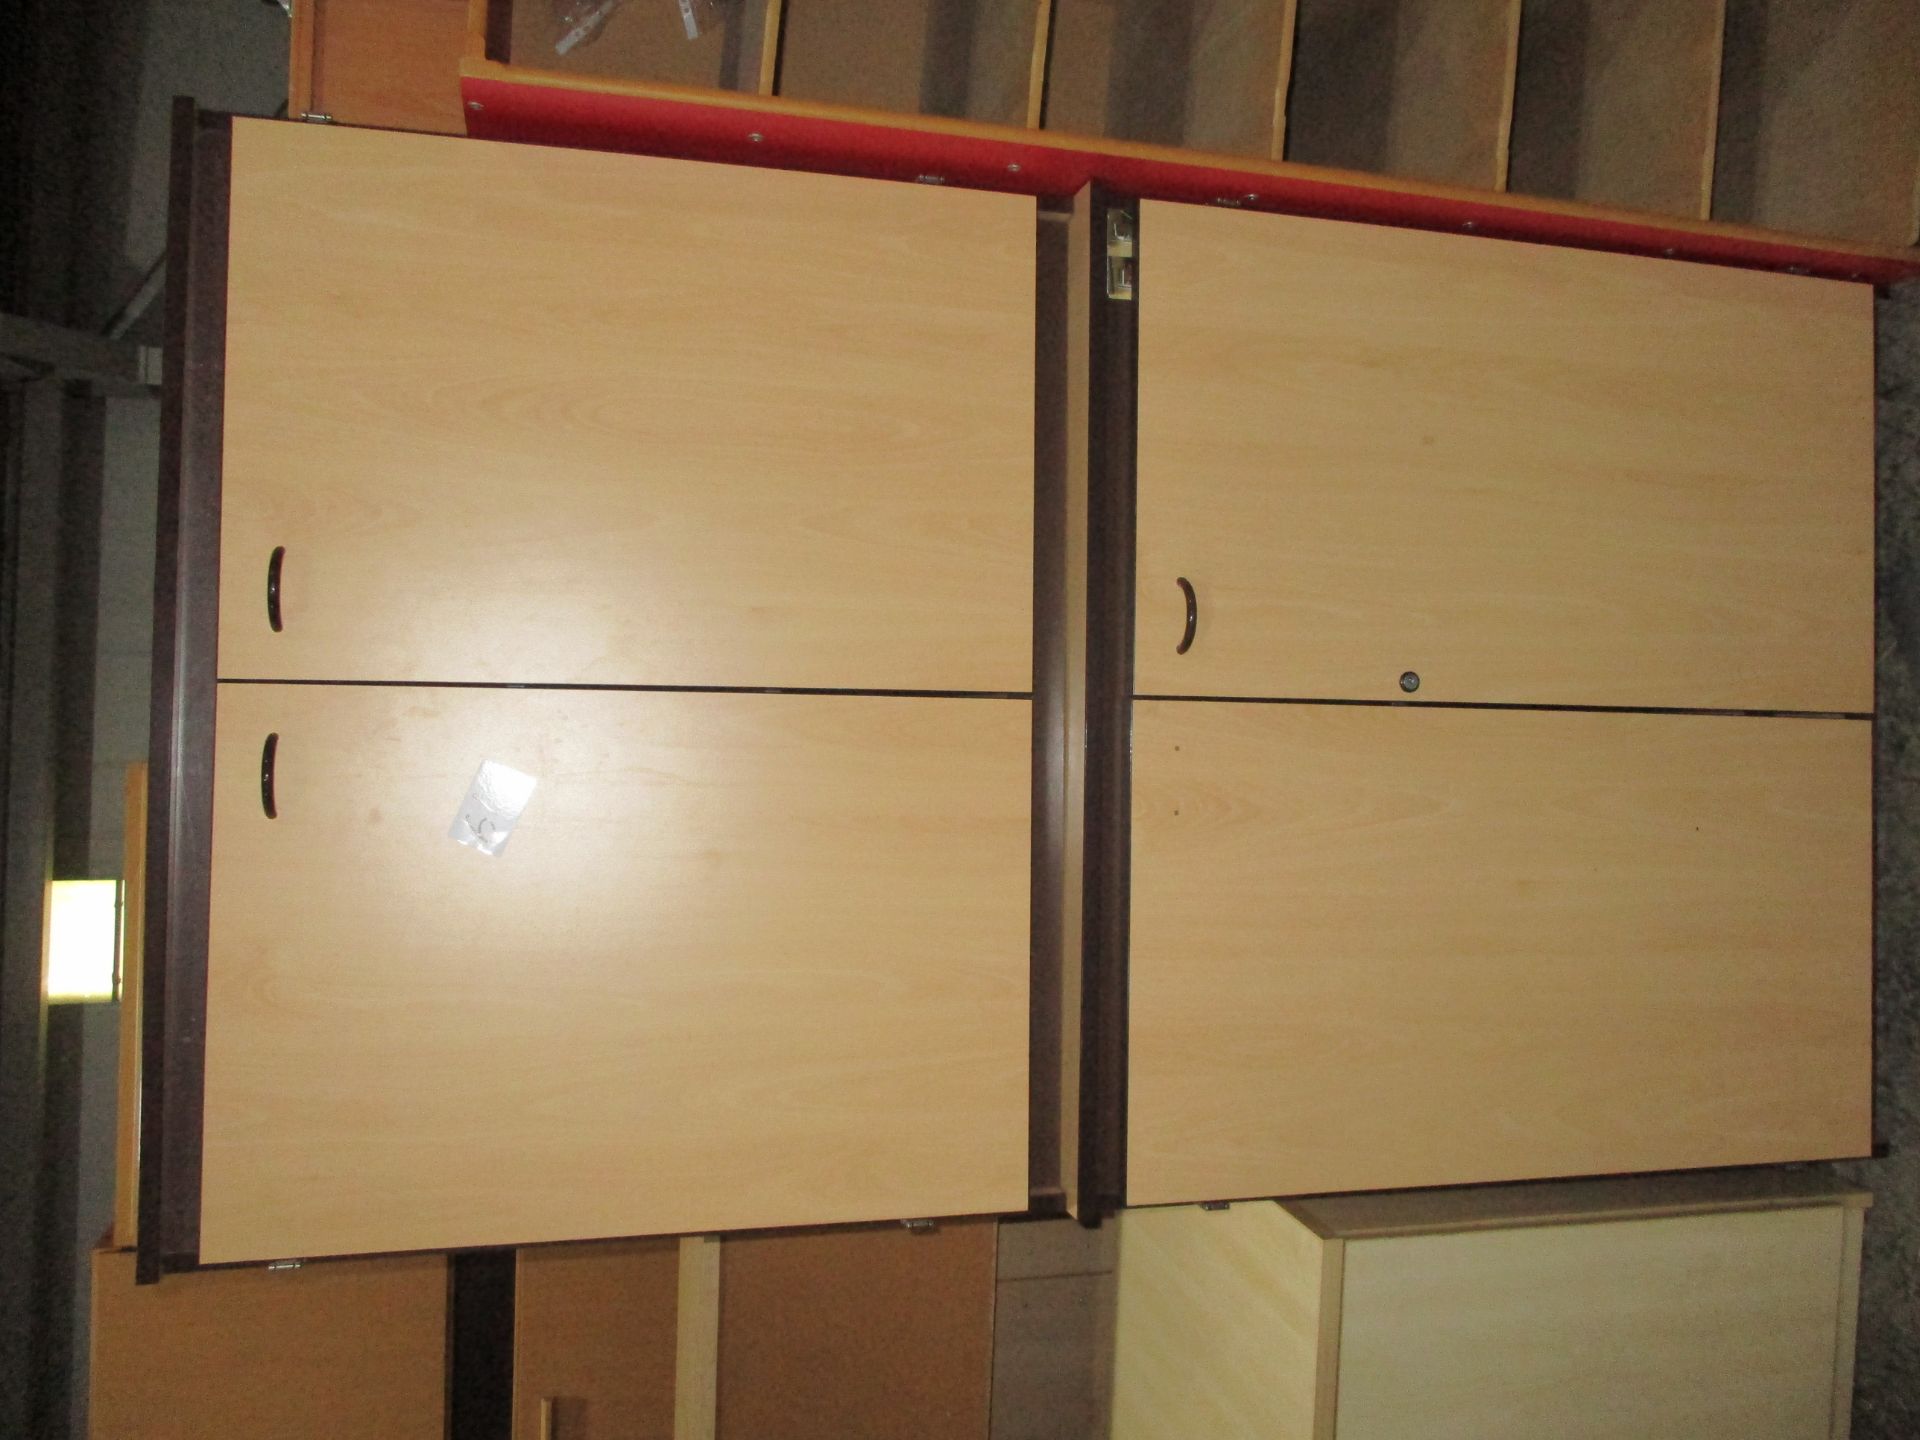 2 X Storage Cupboards